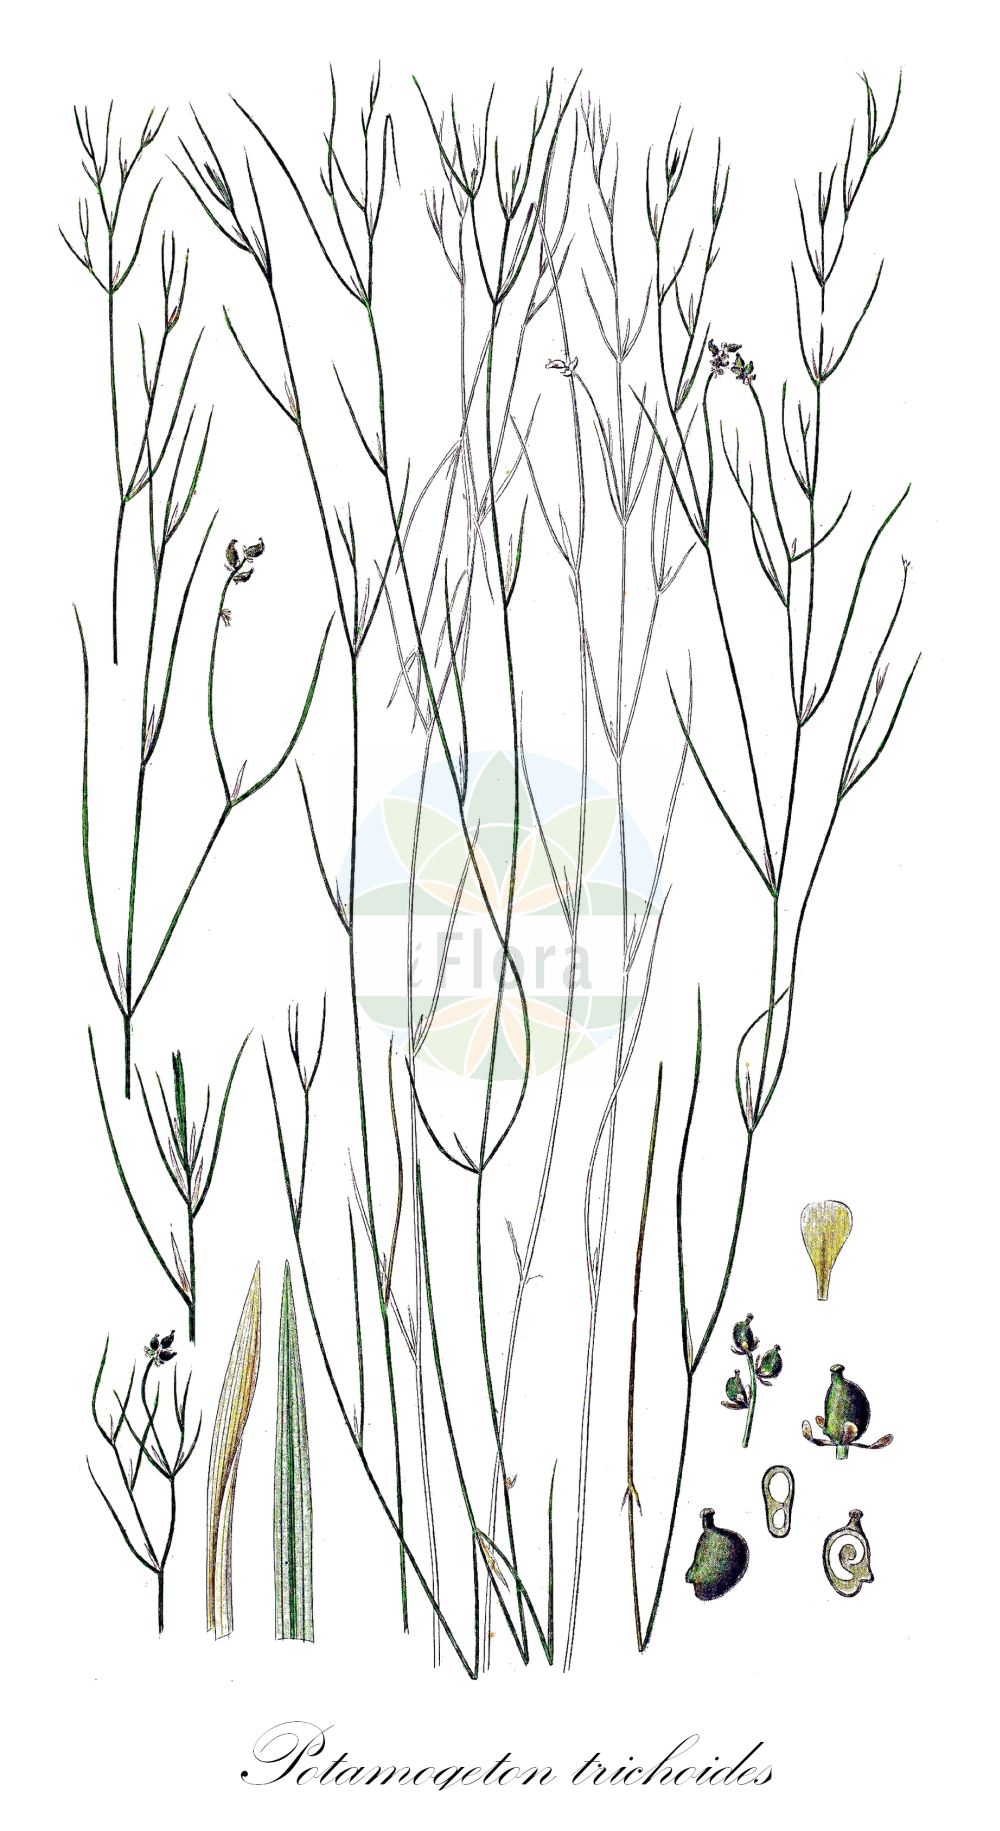 Historische Abbildung von Potamogeton trichoides (Haarförmiges Laichkraut - Hairlike Pondweed). Das Bild zeigt Blatt, Bluete, Frucht und Same. ---- Historical Drawing of Potamogeton trichoides (Haarförmiges Laichkraut - Hairlike Pondweed). The image is showing leaf, flower, fruit and seed.(Potamogeton trichoides,Haarförmiges Laichkraut,Hairlike Pondweed,Potamogeton phialae,Potamogeton trichoides,Haarfoermiges Laichkraut,Haarblaettriges Laichkraut,Haarfeines Laichkraut,Hairlike Pondweed,Potamogeton,Laichkraut,Pondweed,Potamogetonaceae,Laichkrautgewächse,Pondweed family,Blatt,Bluete,Frucht,Same,leaf,flower,fruit,seed,Oeder (1761-1883))